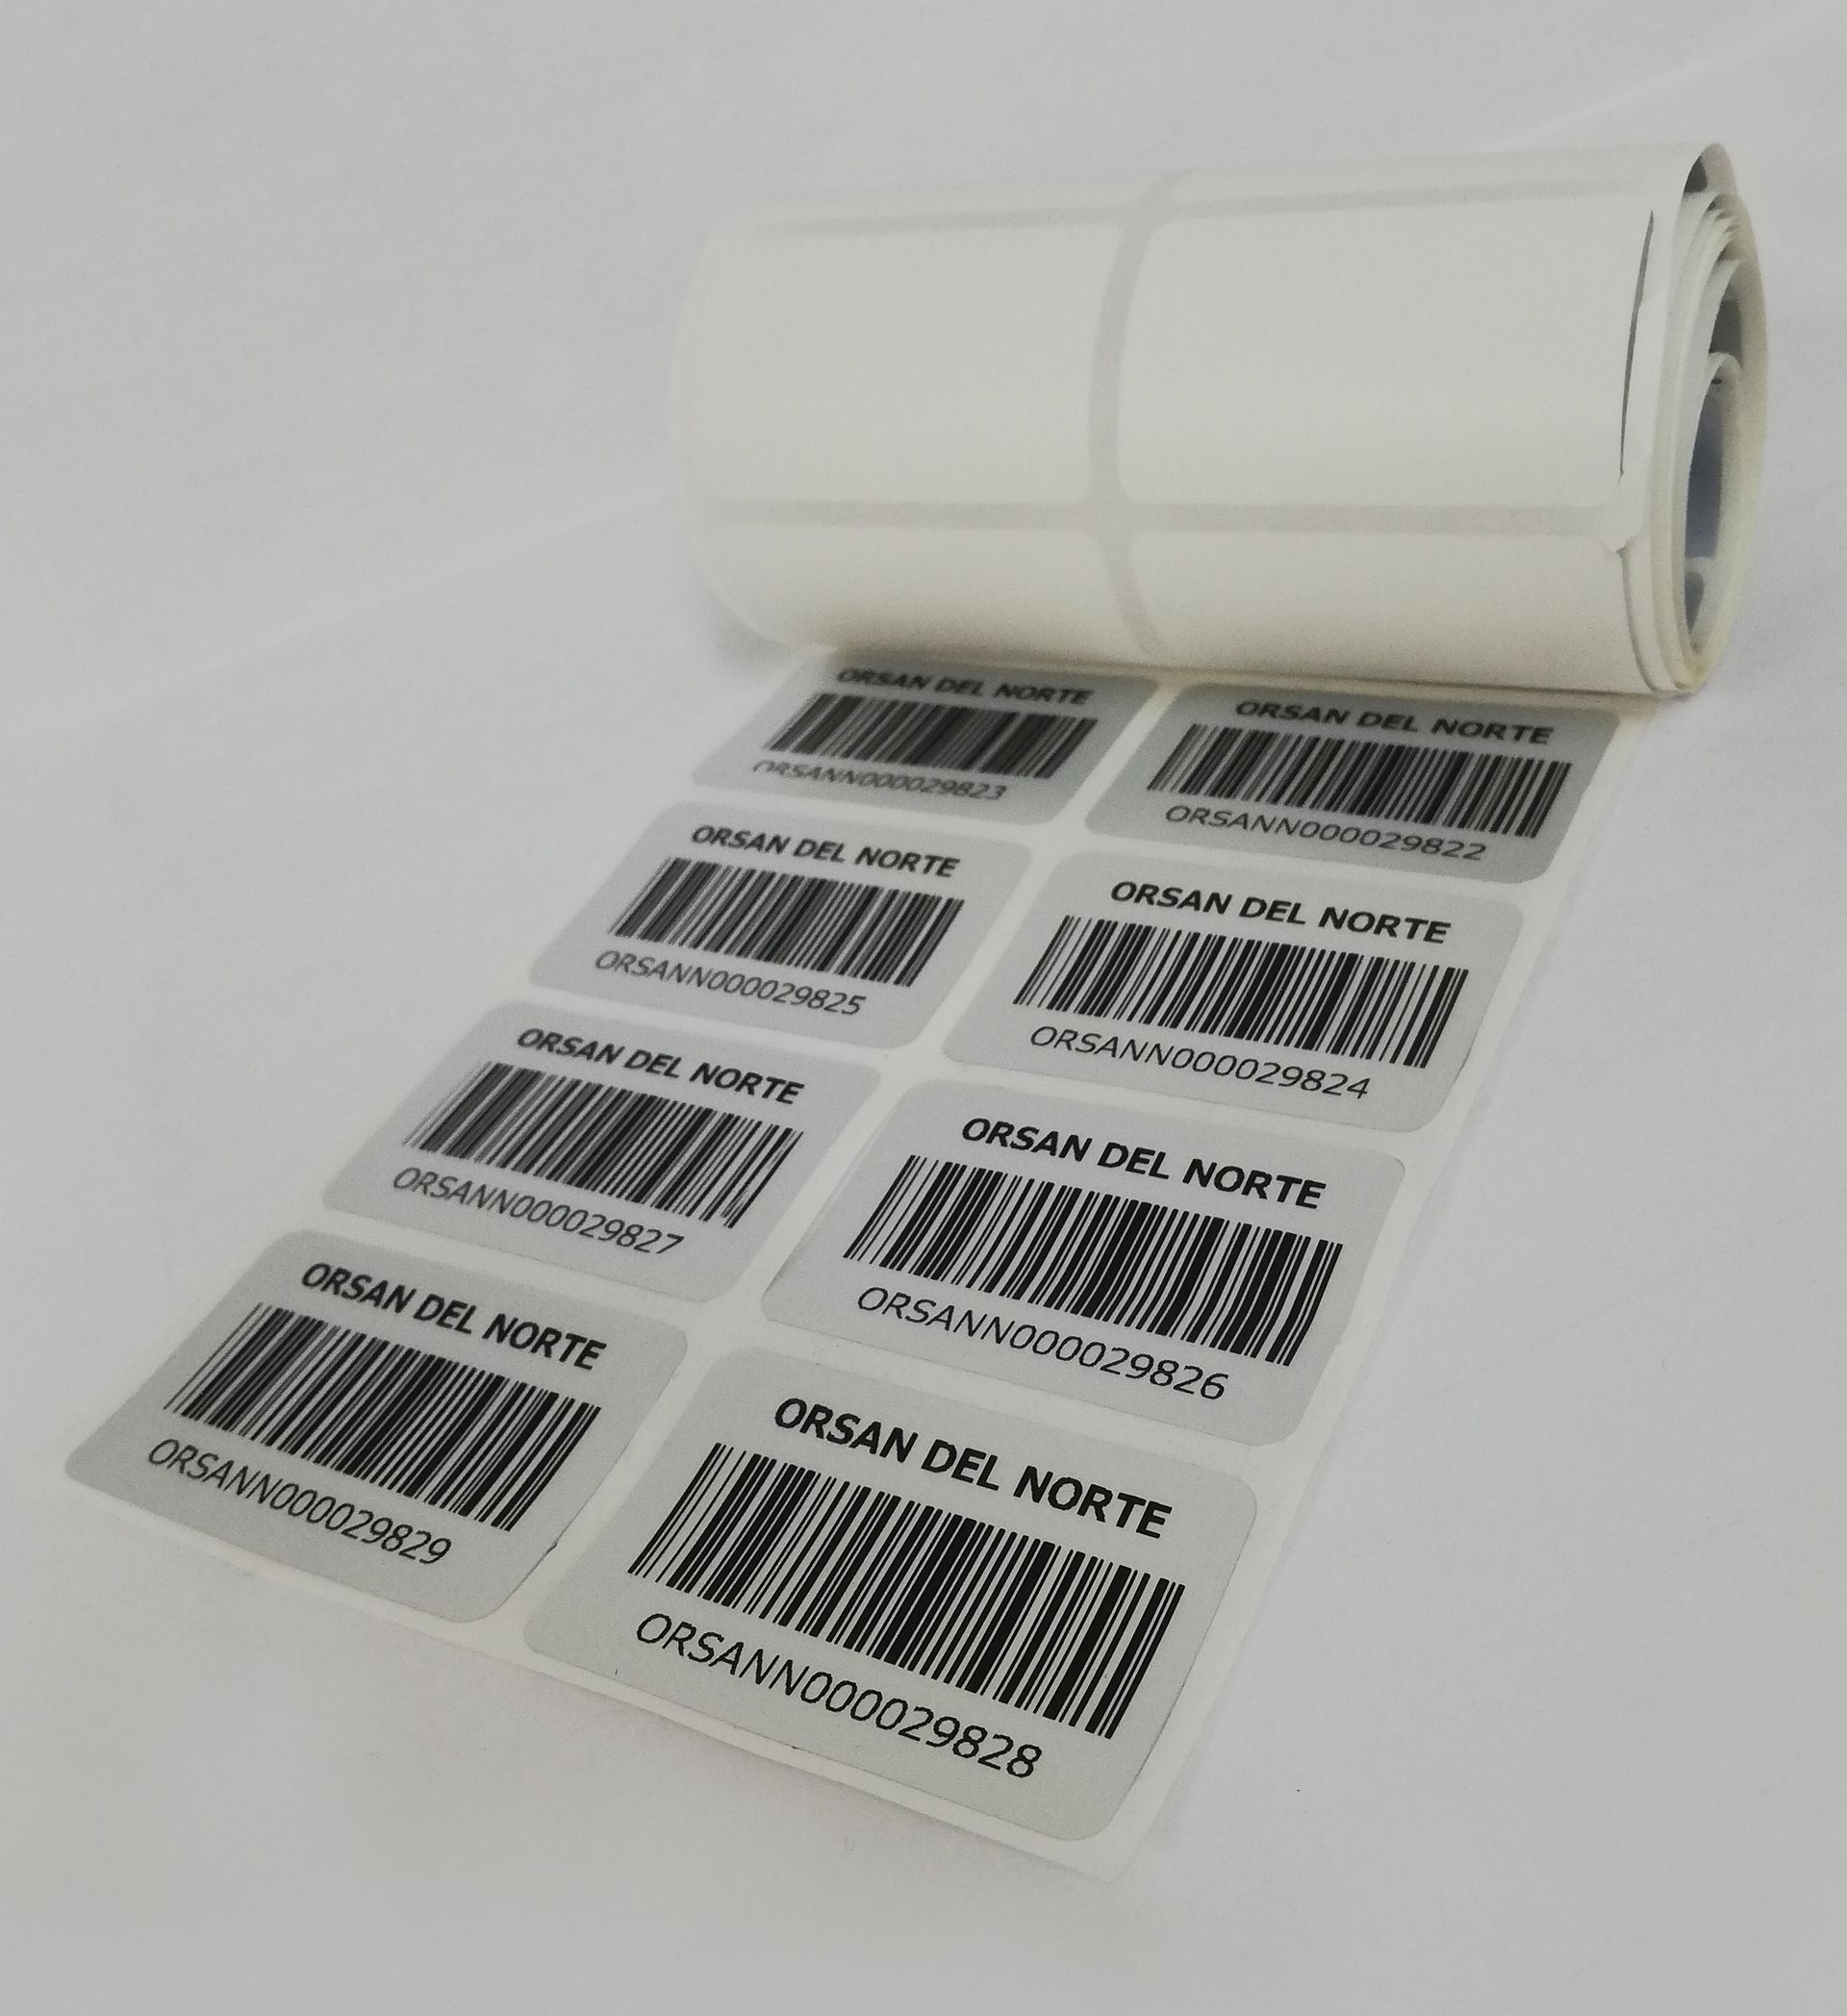 etiqueta adhesiva con código de seguridad